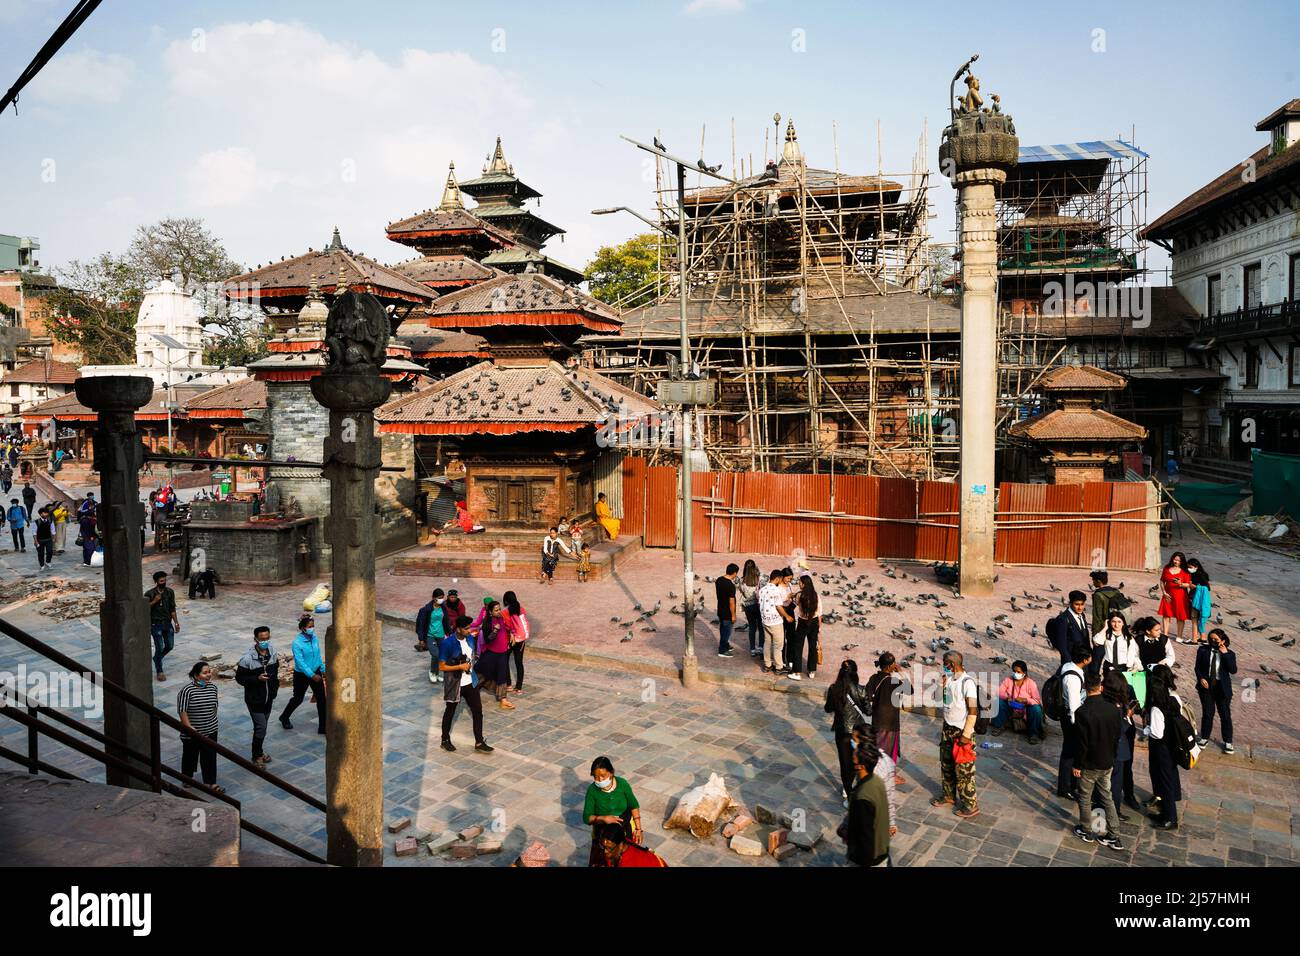 Durch das Erdbeben am 25.4.2015 zerstörte Tempel im Tempelbezirk Durbar Square werden reatauriert, Kathmandu, Nepal Stock Photo